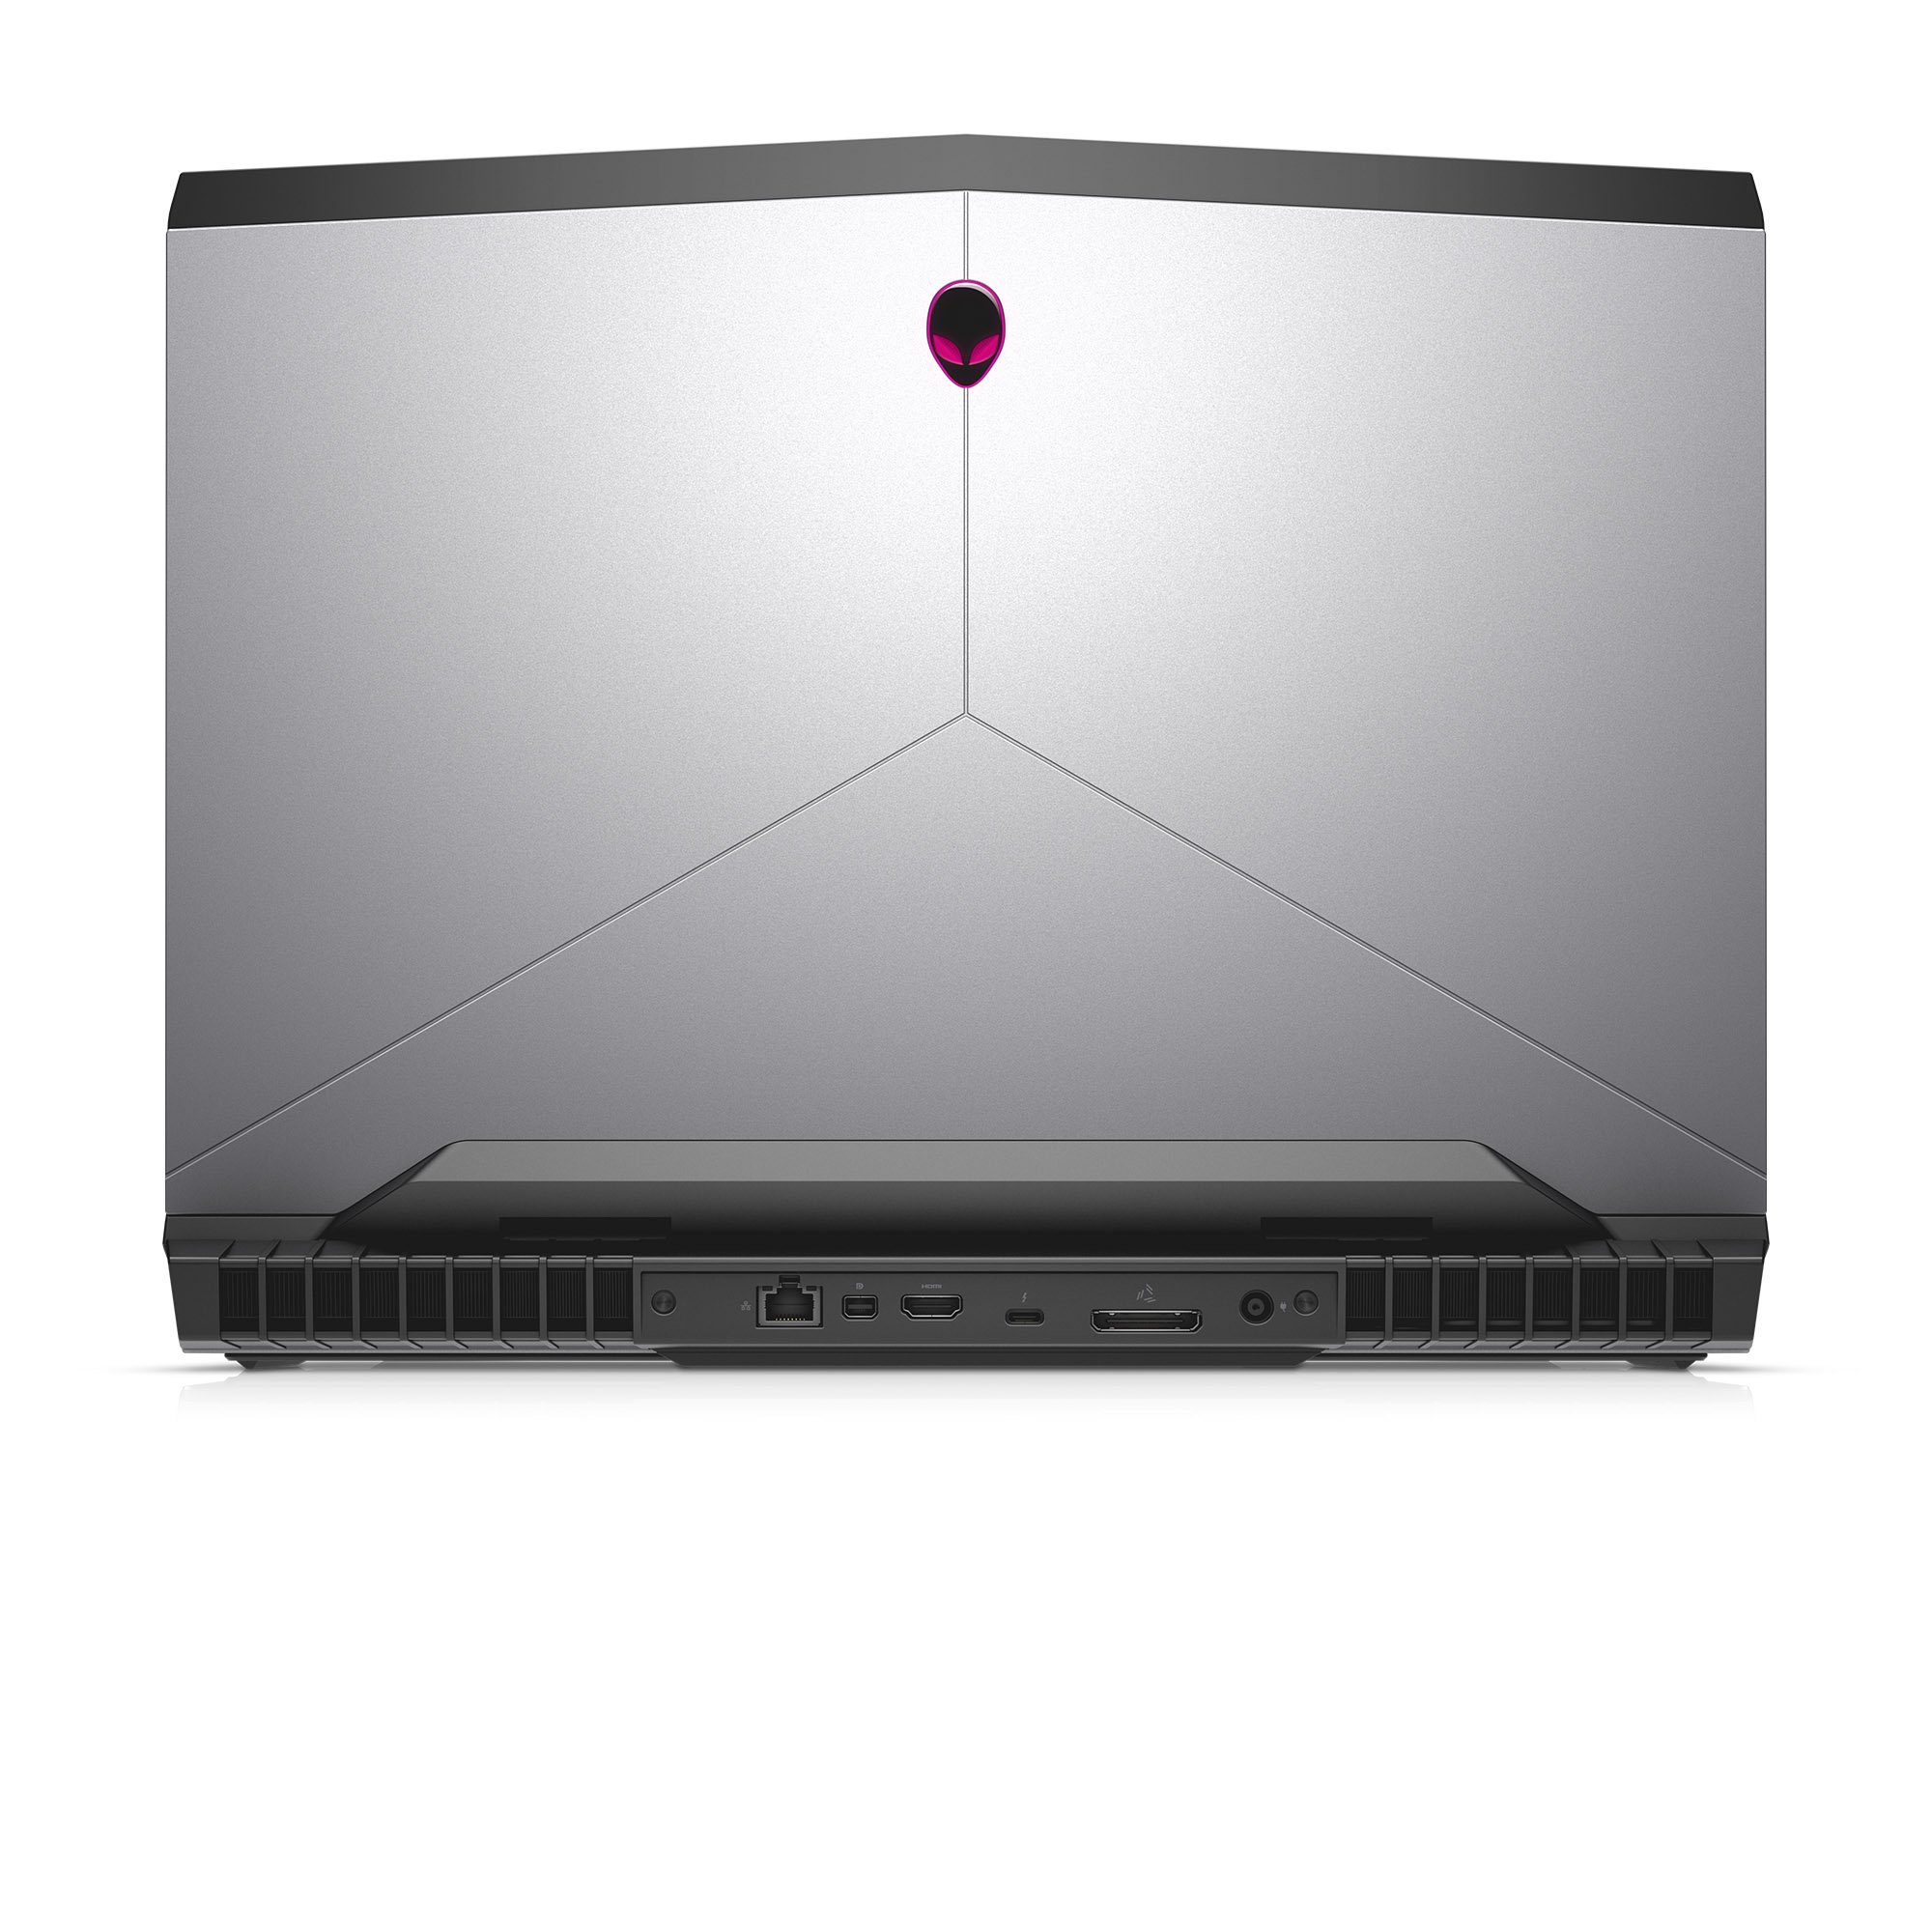 Dell Alienware 17-Inch Gaming Laptop, QHD (2560x1440) 120Hz Refresh Anti-Glare G-Sync Display (400 Nits), i7-7700HQ, GTX 1070 8GB, 16GB DDR4, 128GB SSD + 1TB HDD, Windows 64-bit, AW17R4-7001SLV-PUS